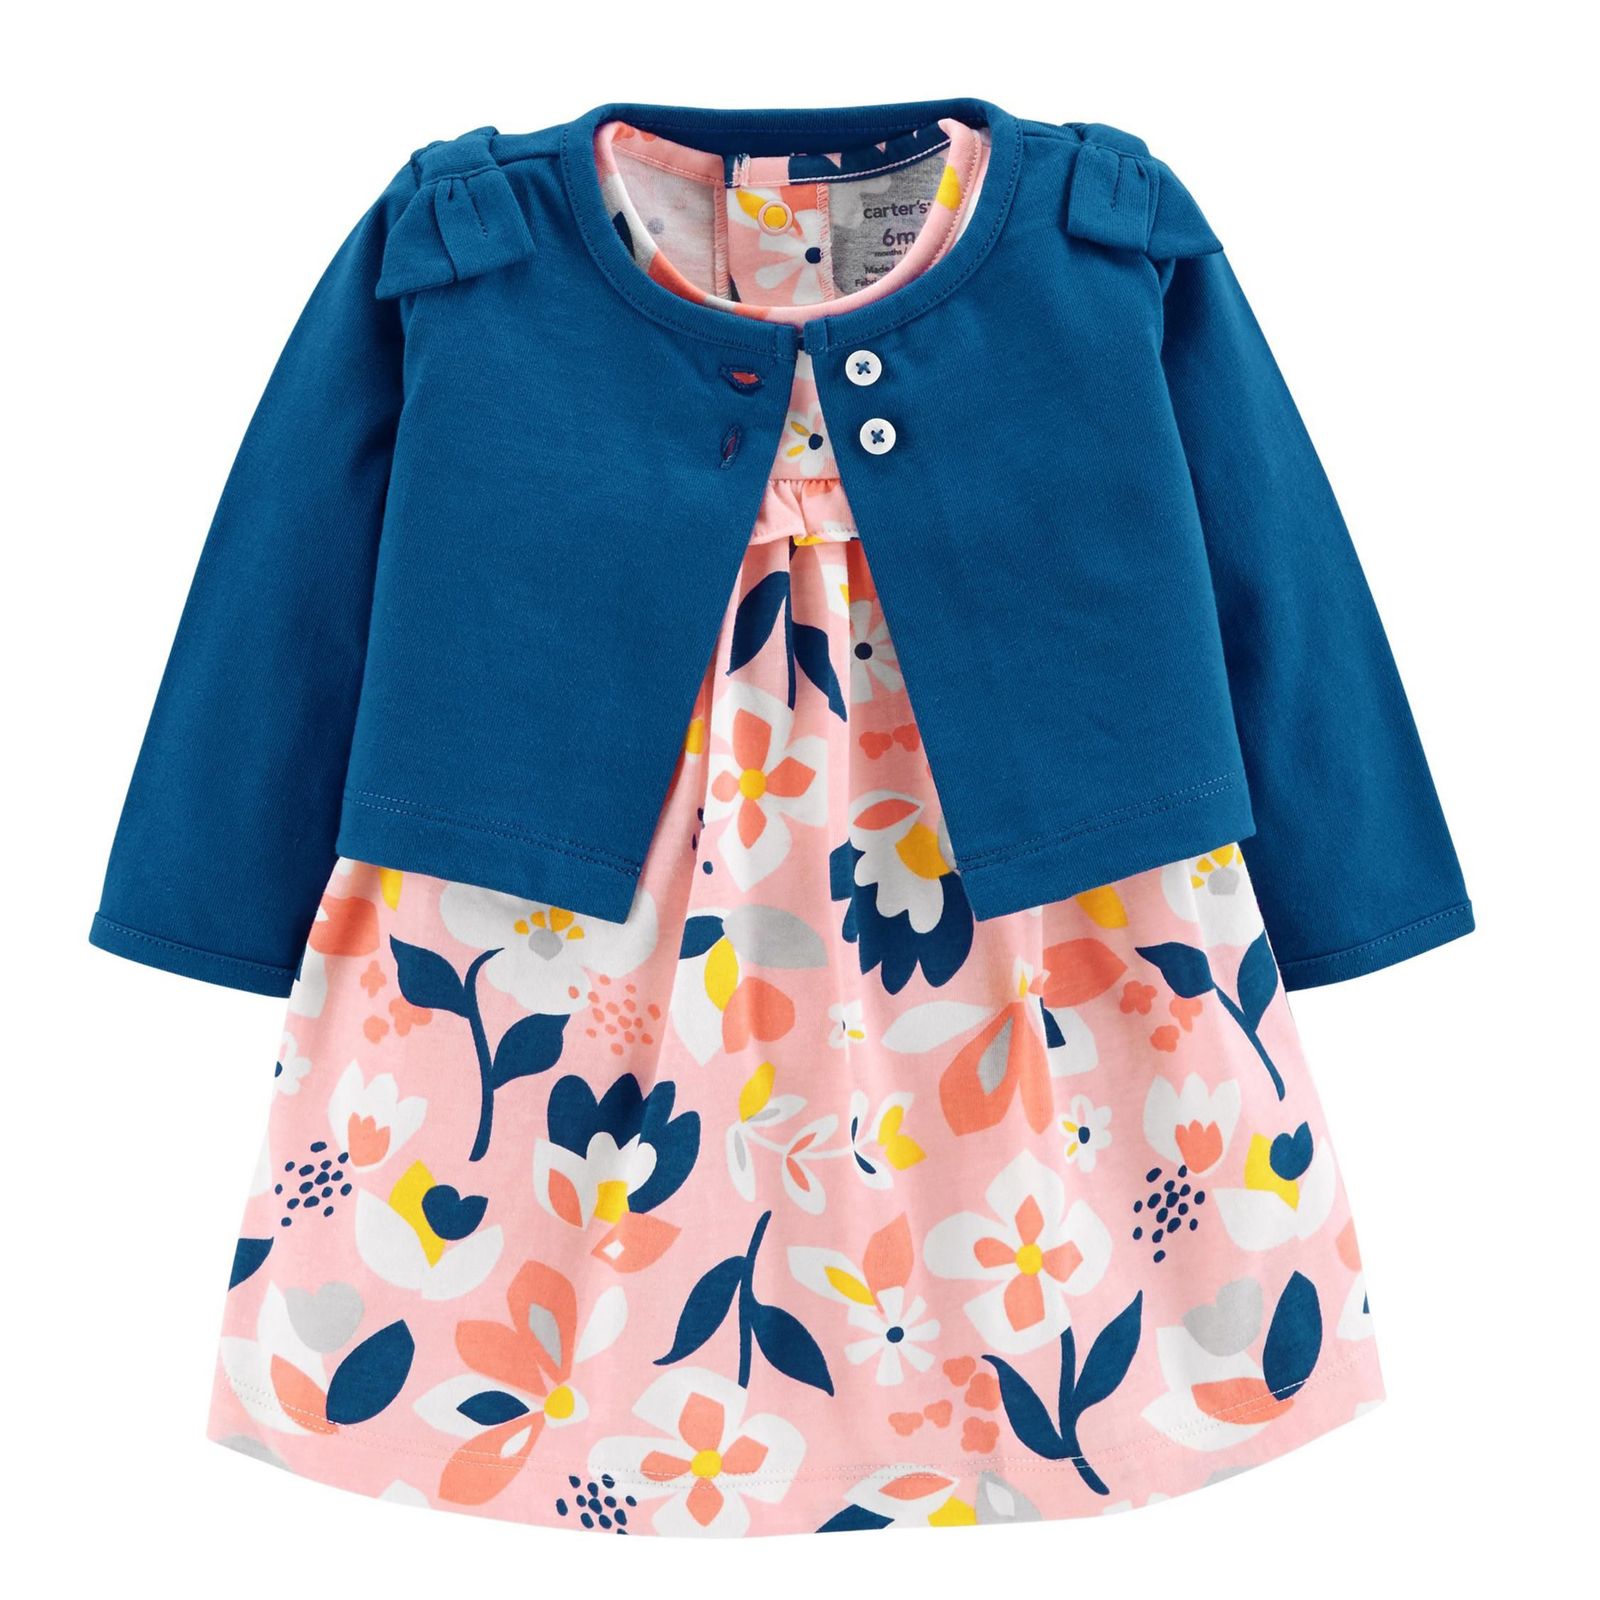 ست کت و پیراهن نوزادی دخترانه کارترز طرح Floral کد M615 -  - 2